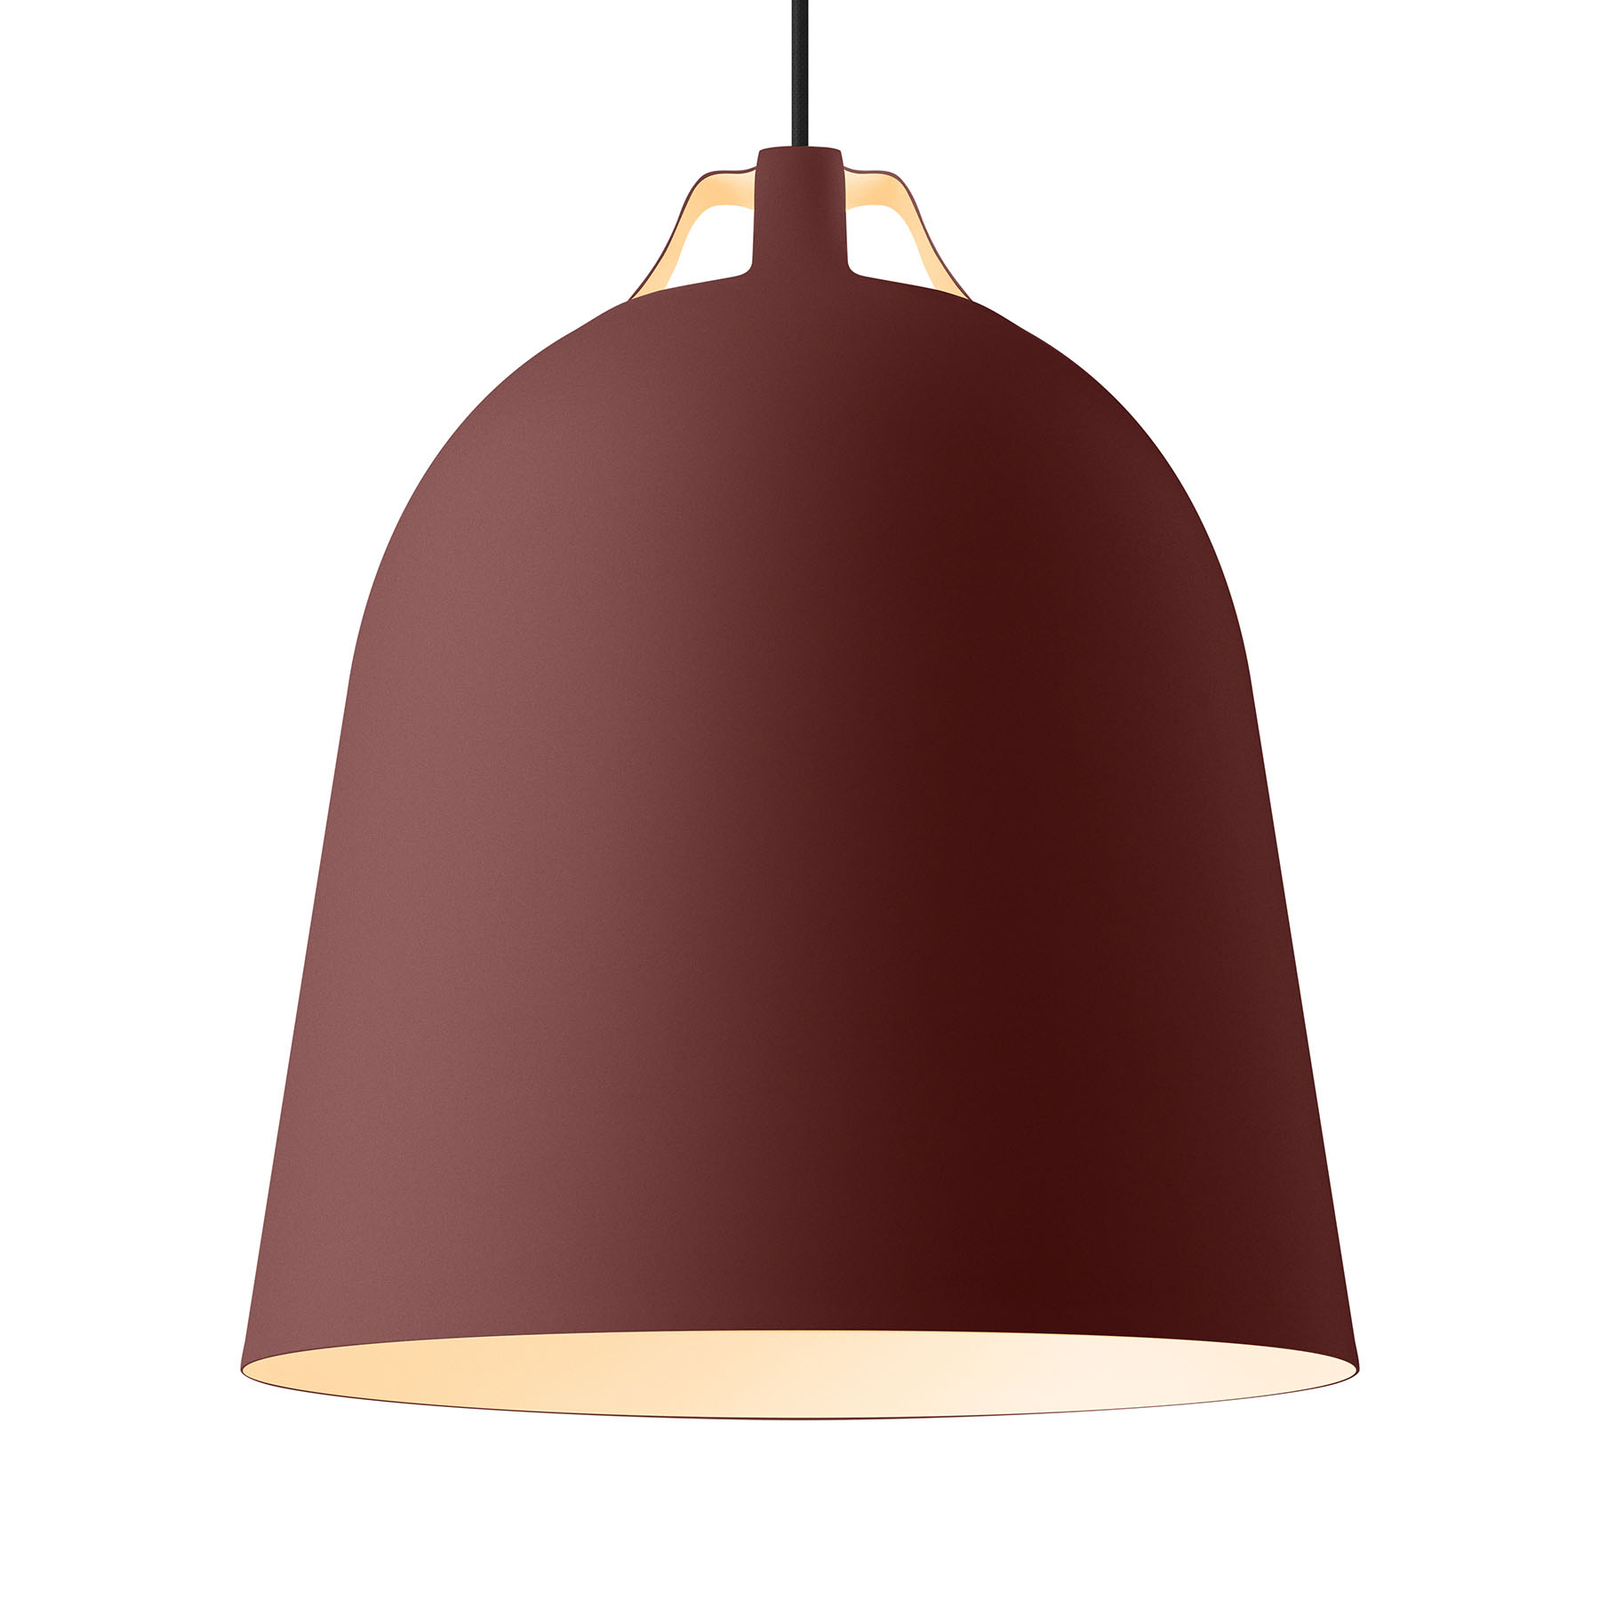 EVA Solo Clover hængelampe, Ø 35cm, burgunderrød